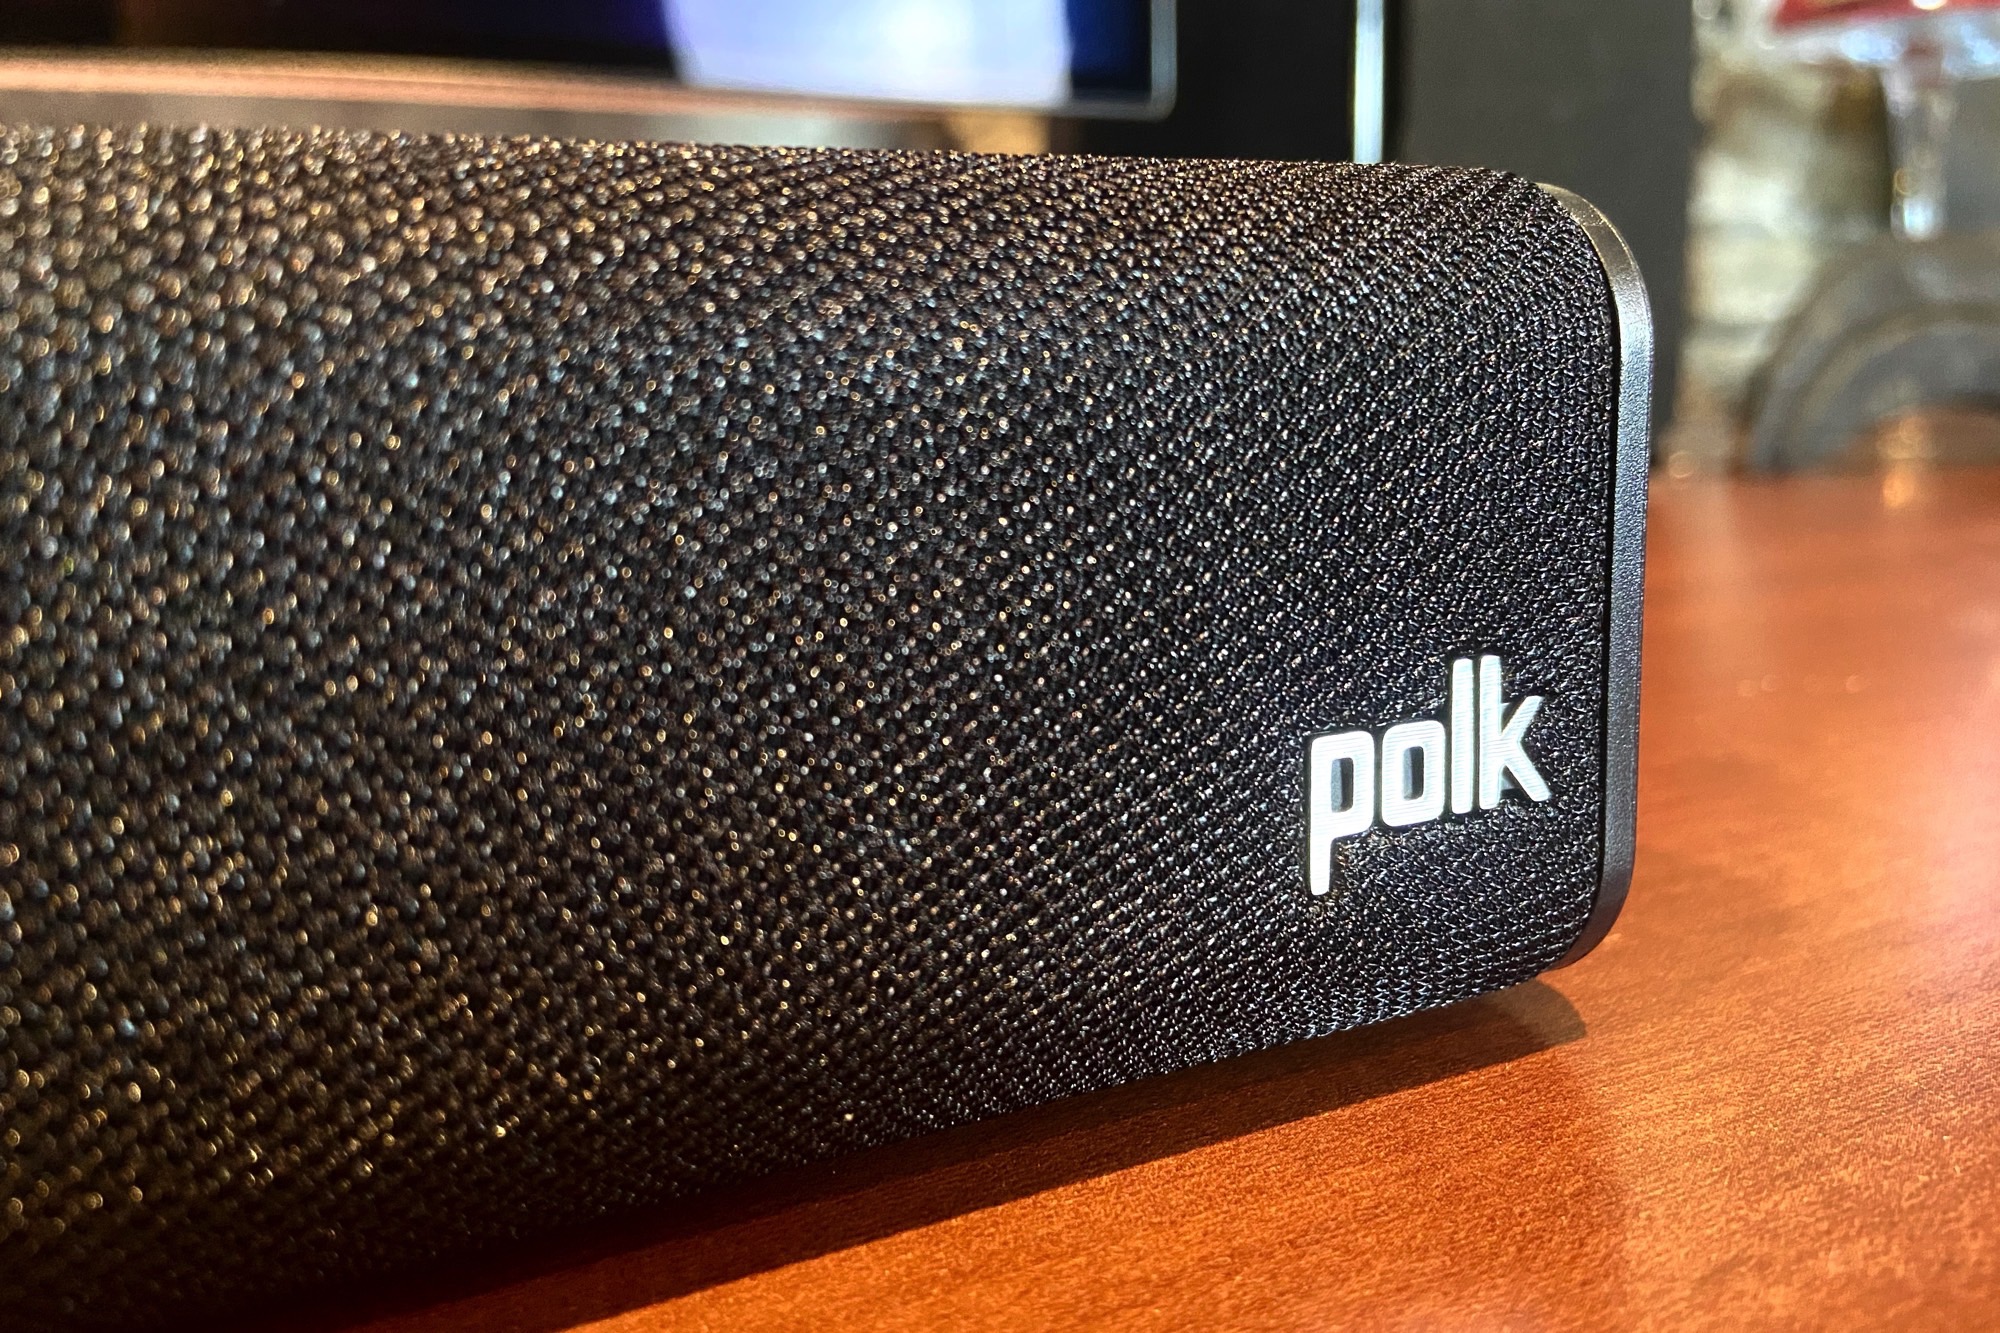 Polk Signa S4 Dolby Atmos 3.1.2 soundbar.